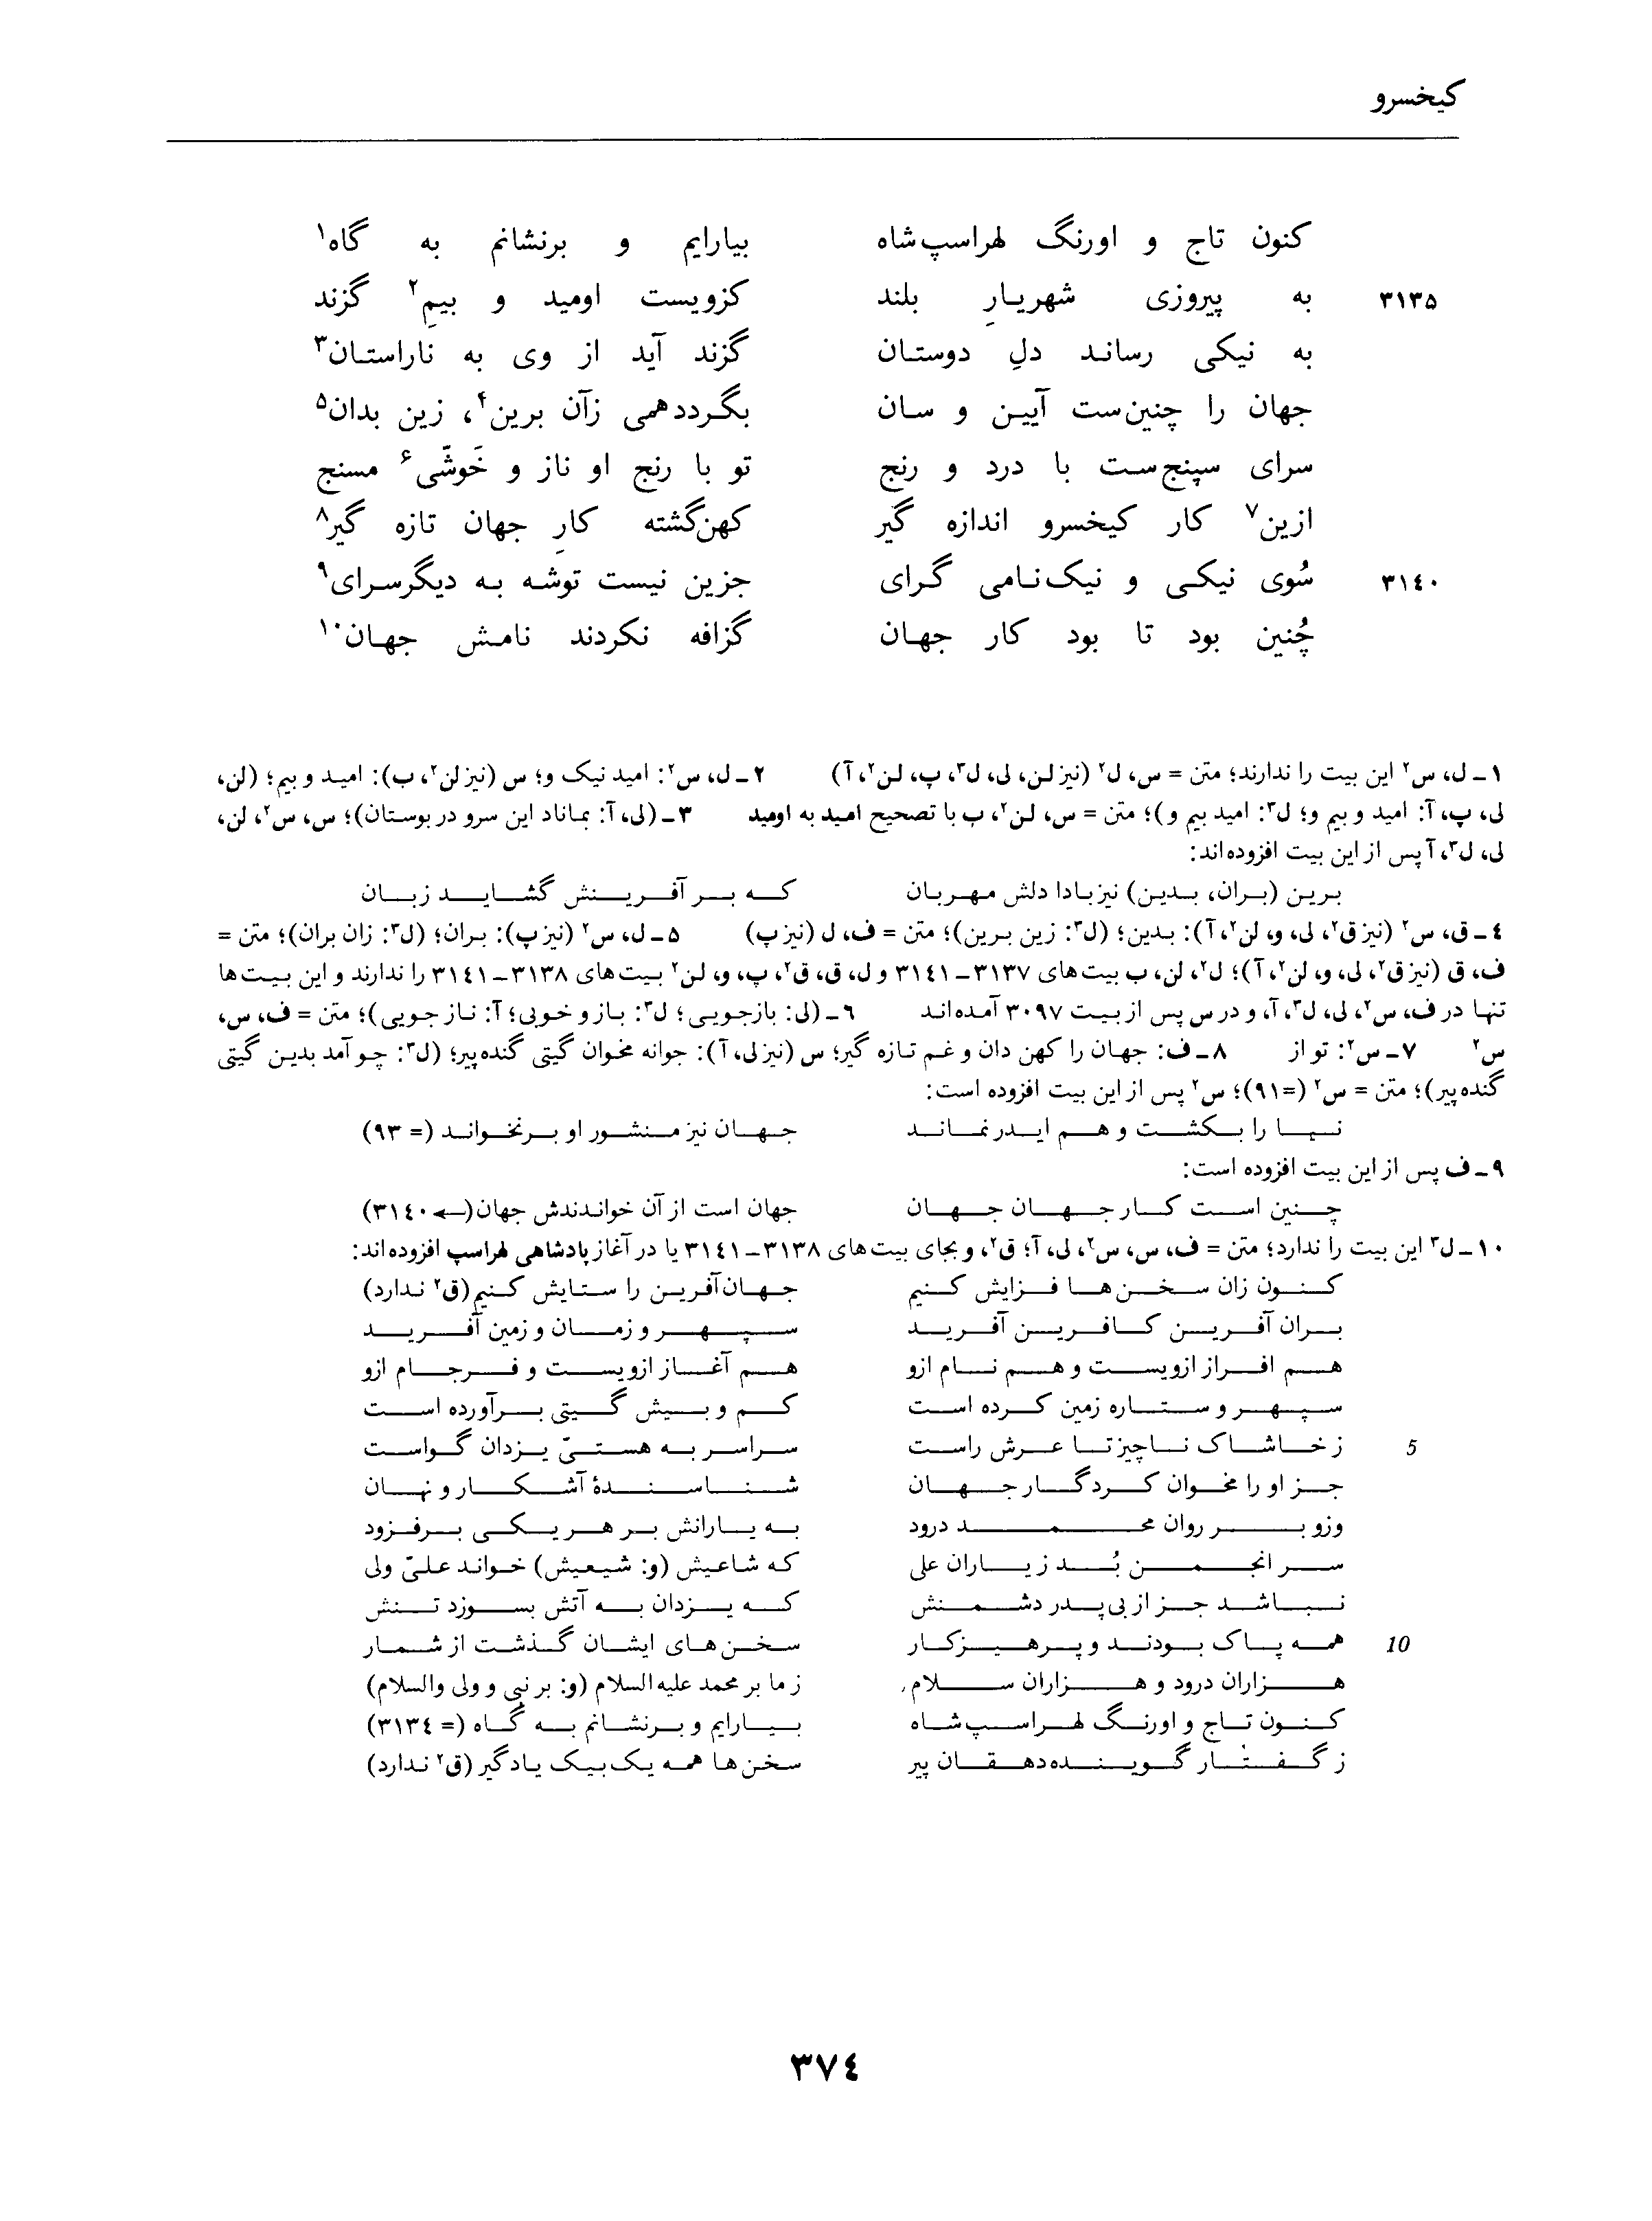 vol. 4, p. 374